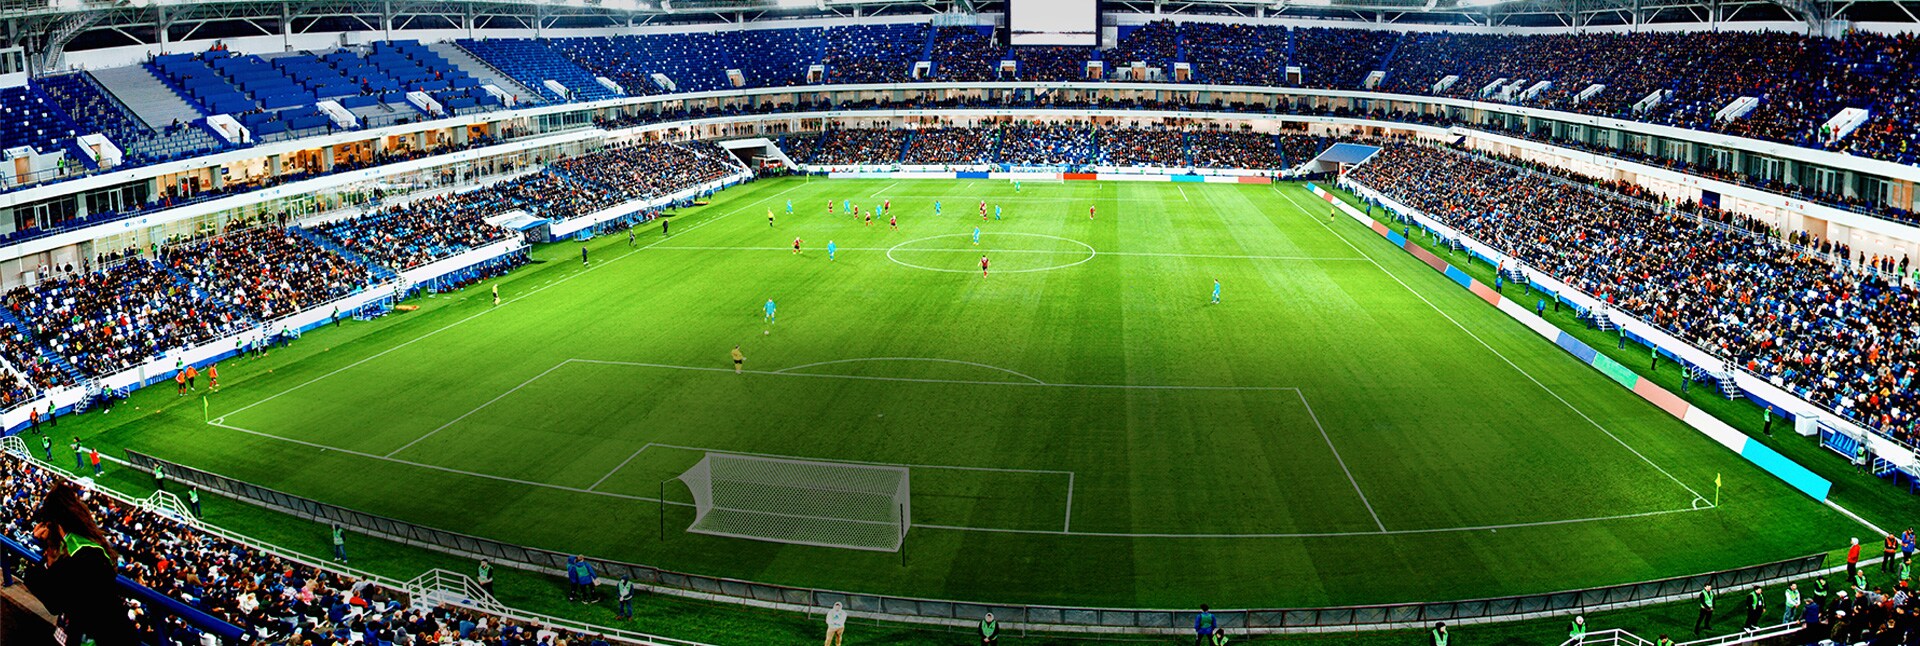 Prikaz stadiona iz vazduha sa dugmetom za vezu